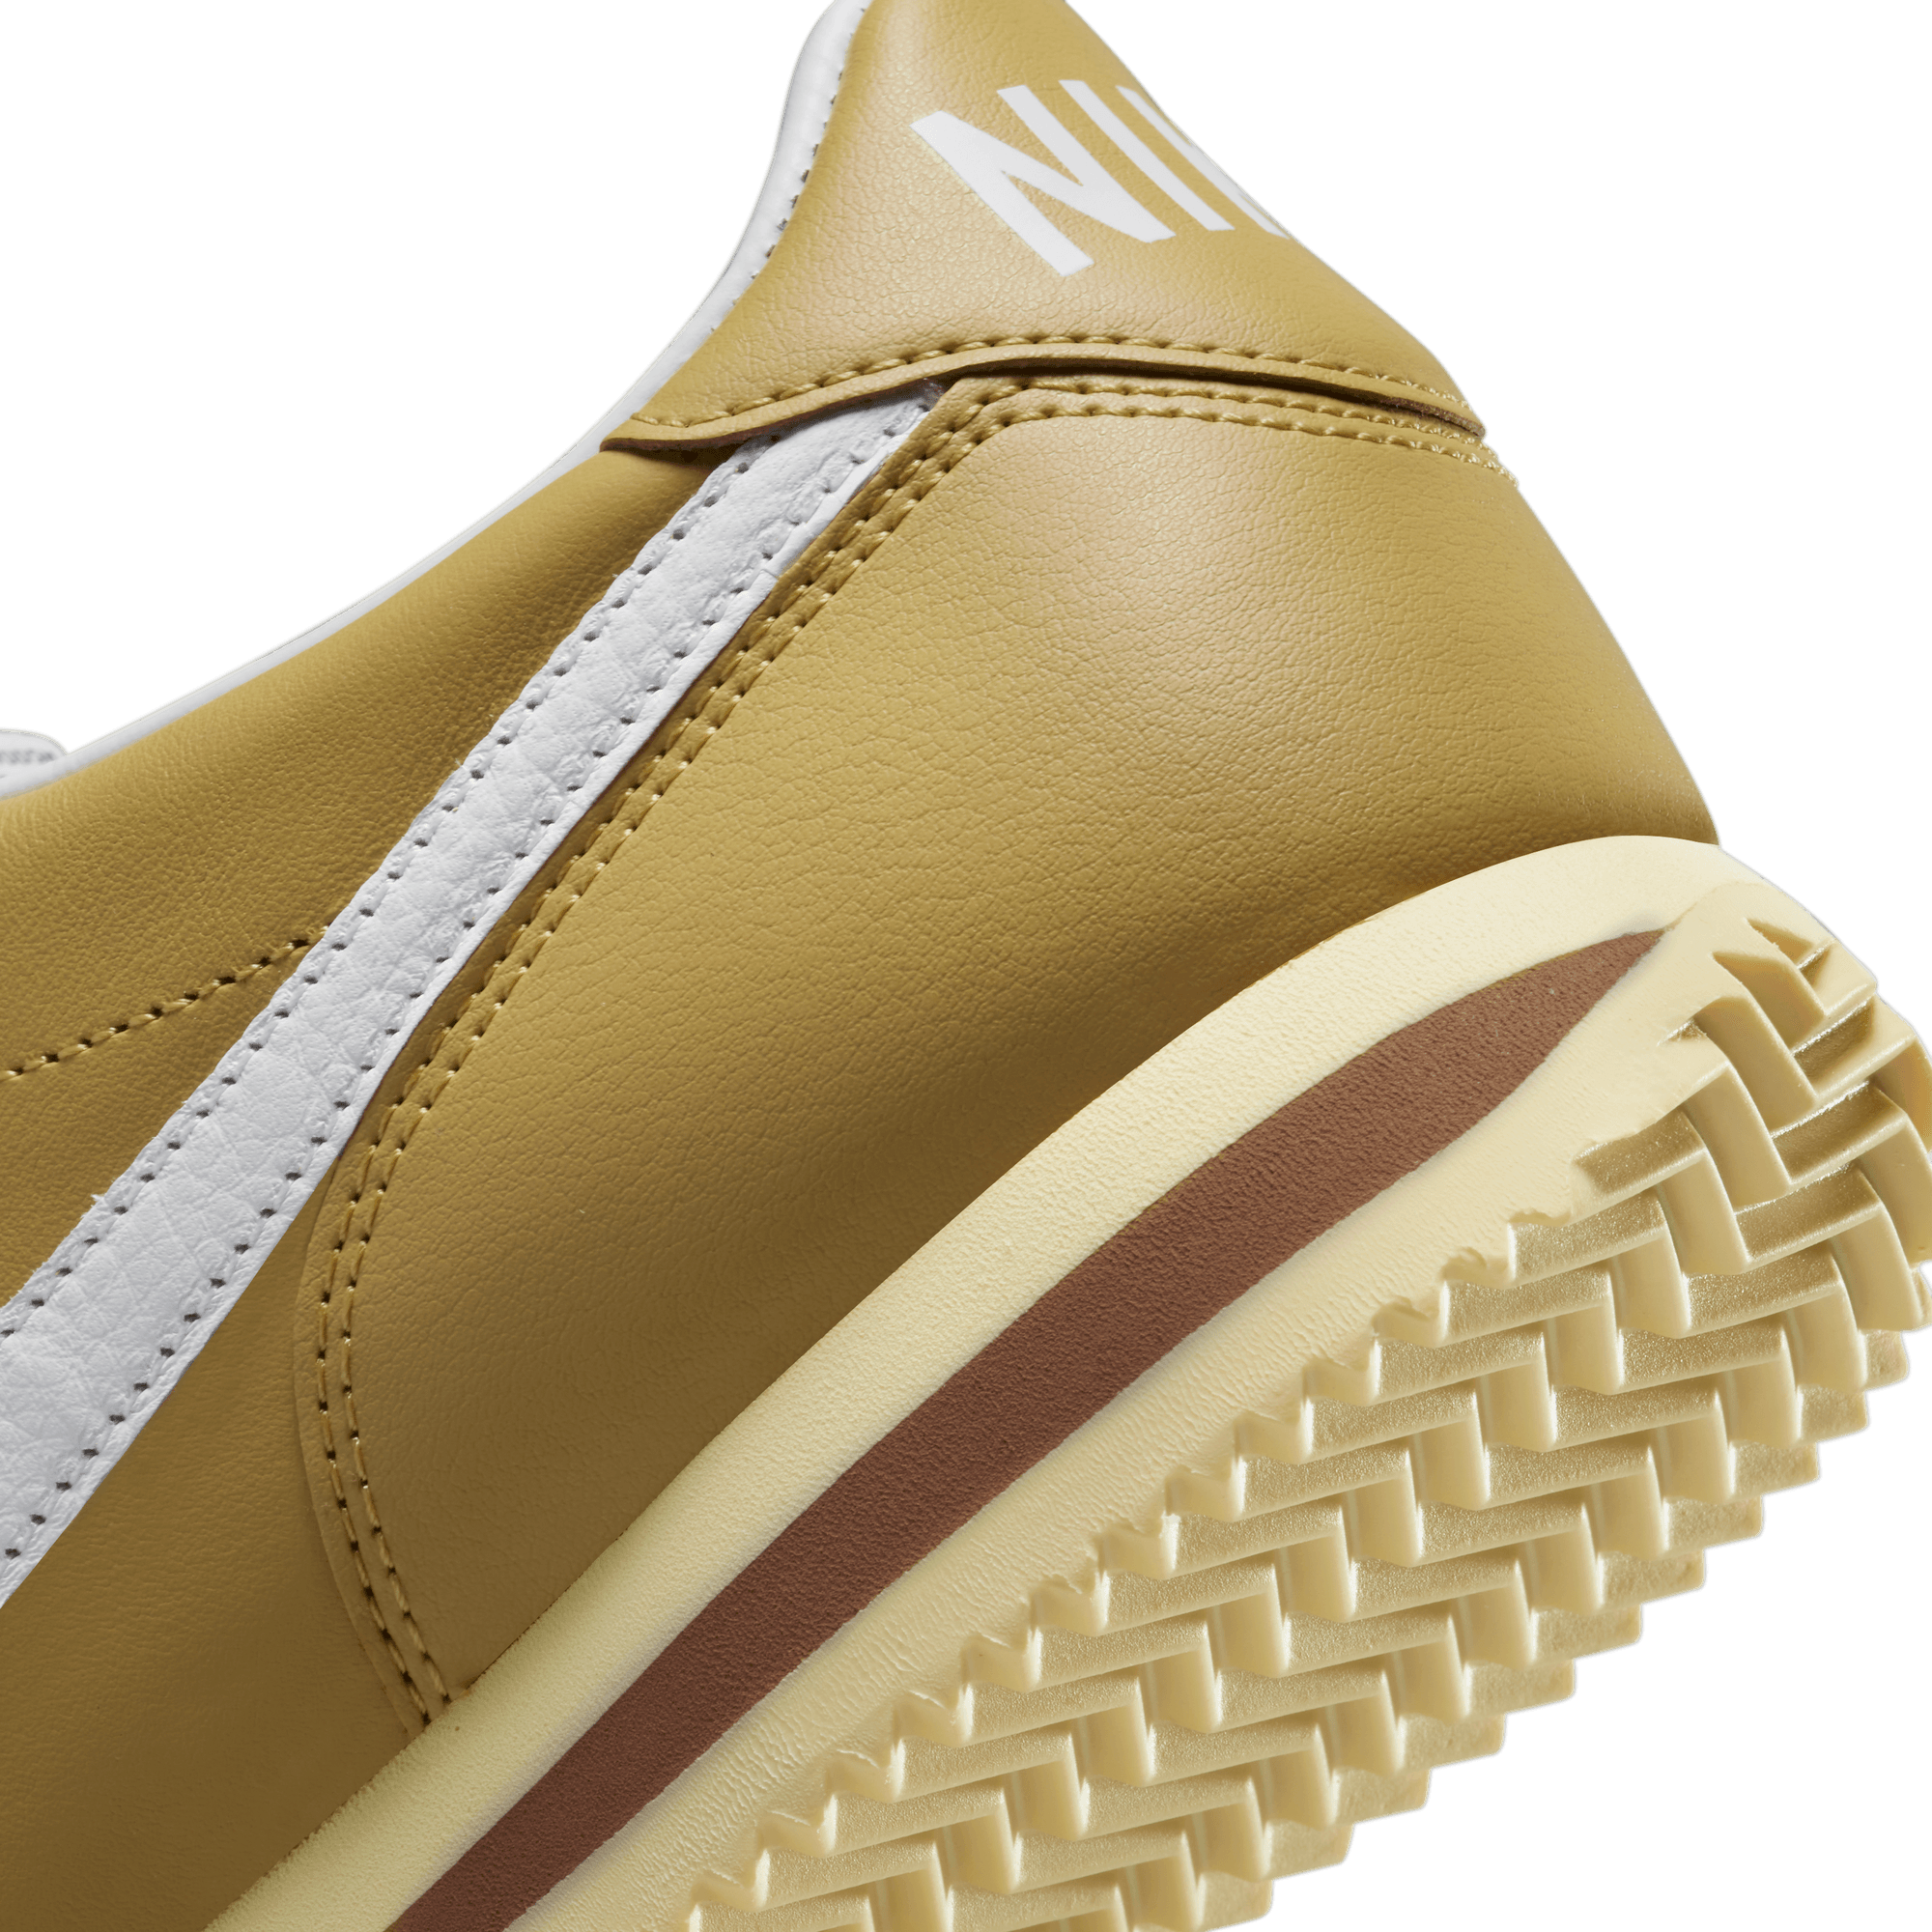 Nike Cortez 23 SE 'Wheat Gold'